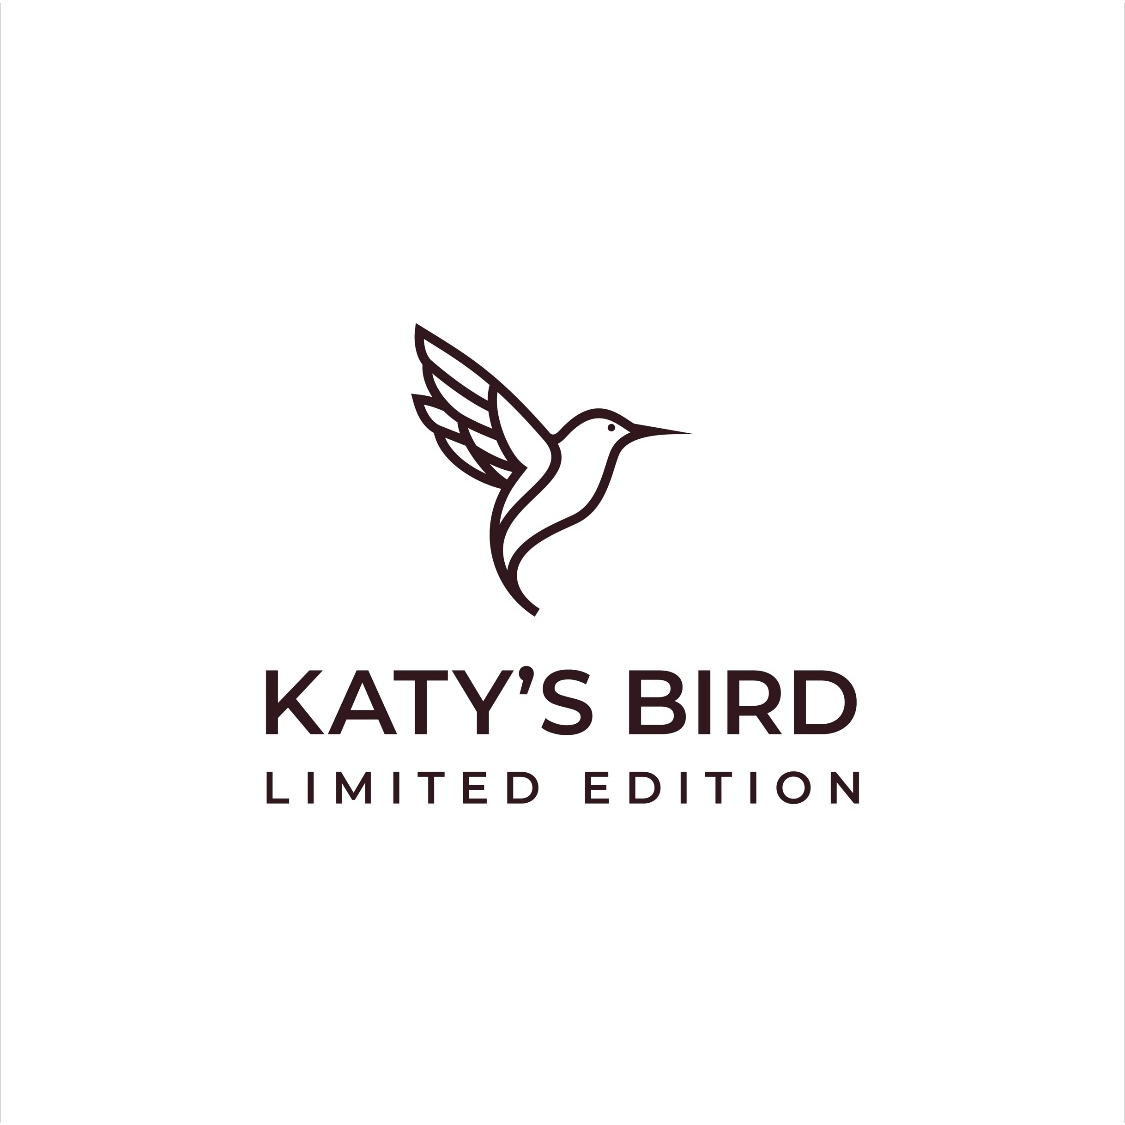 KATY’S BIRD